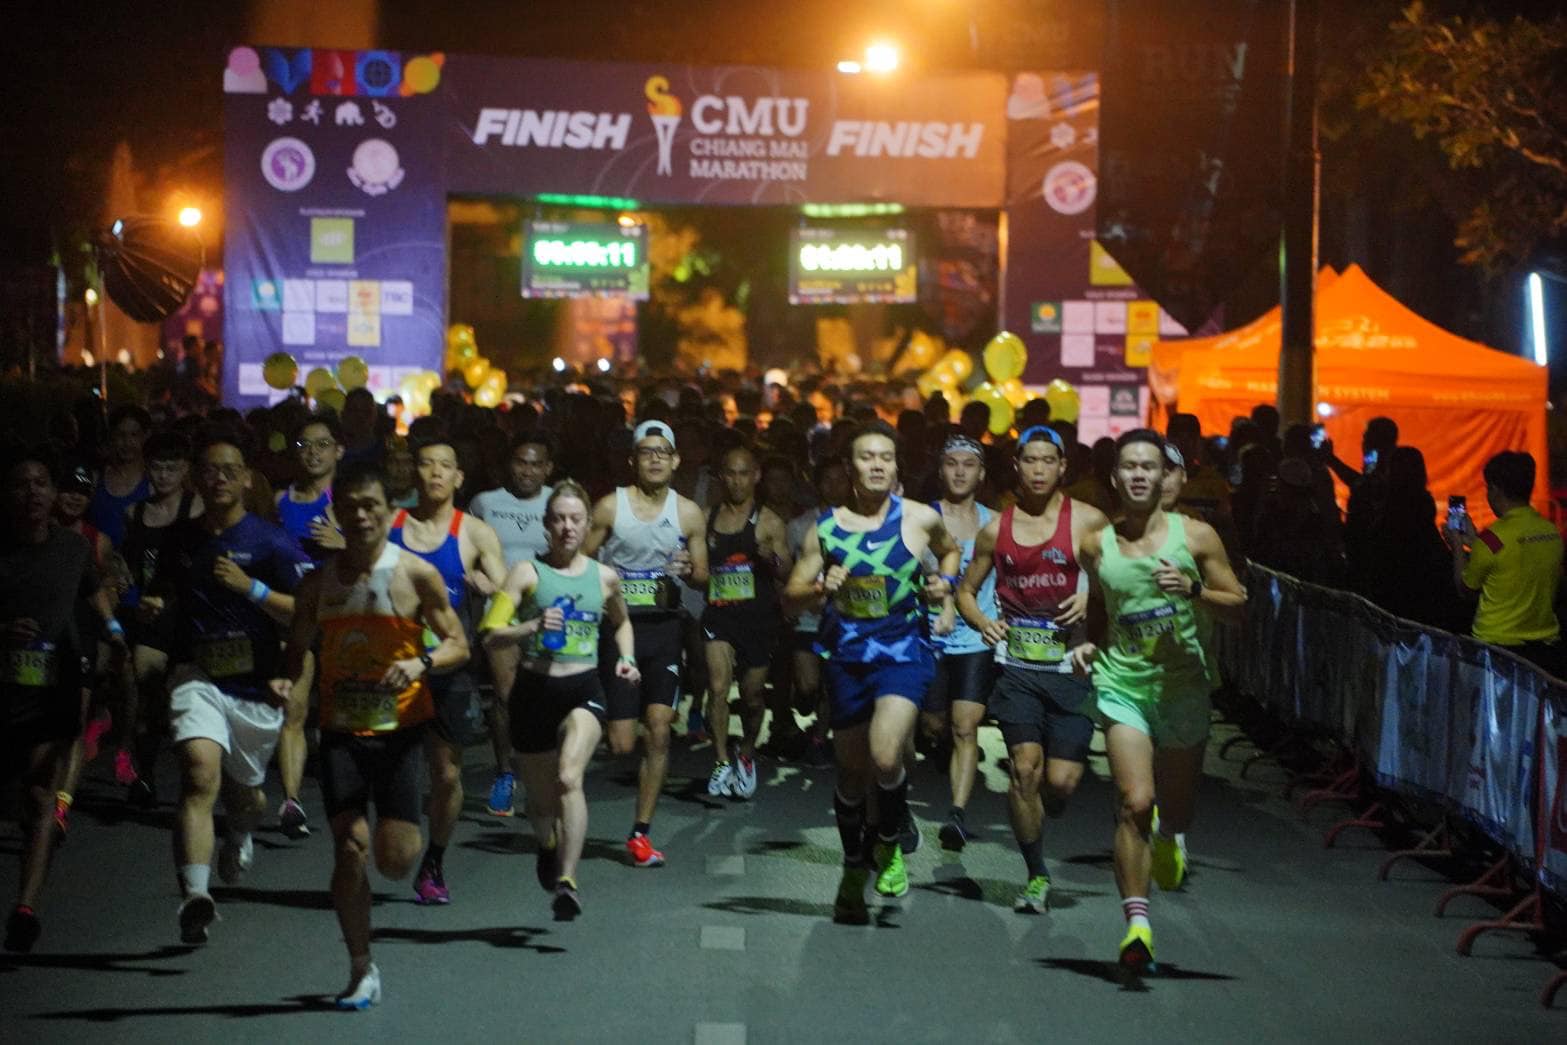 มหาวิทยาลัยเชียงใหม่ จัดกิจกรรมวิ่งการกุศลมหาวิทยาลัยเชียงใหม่ - เชียงใหม่มาราธอน 2565 ครั้งที่ 7 (CMU - Chiang Mai Marathon 2023)  ส่งเสริมให้บุคลากร และประชาชนเห็นความสำคัญของการออกกำลังกาย